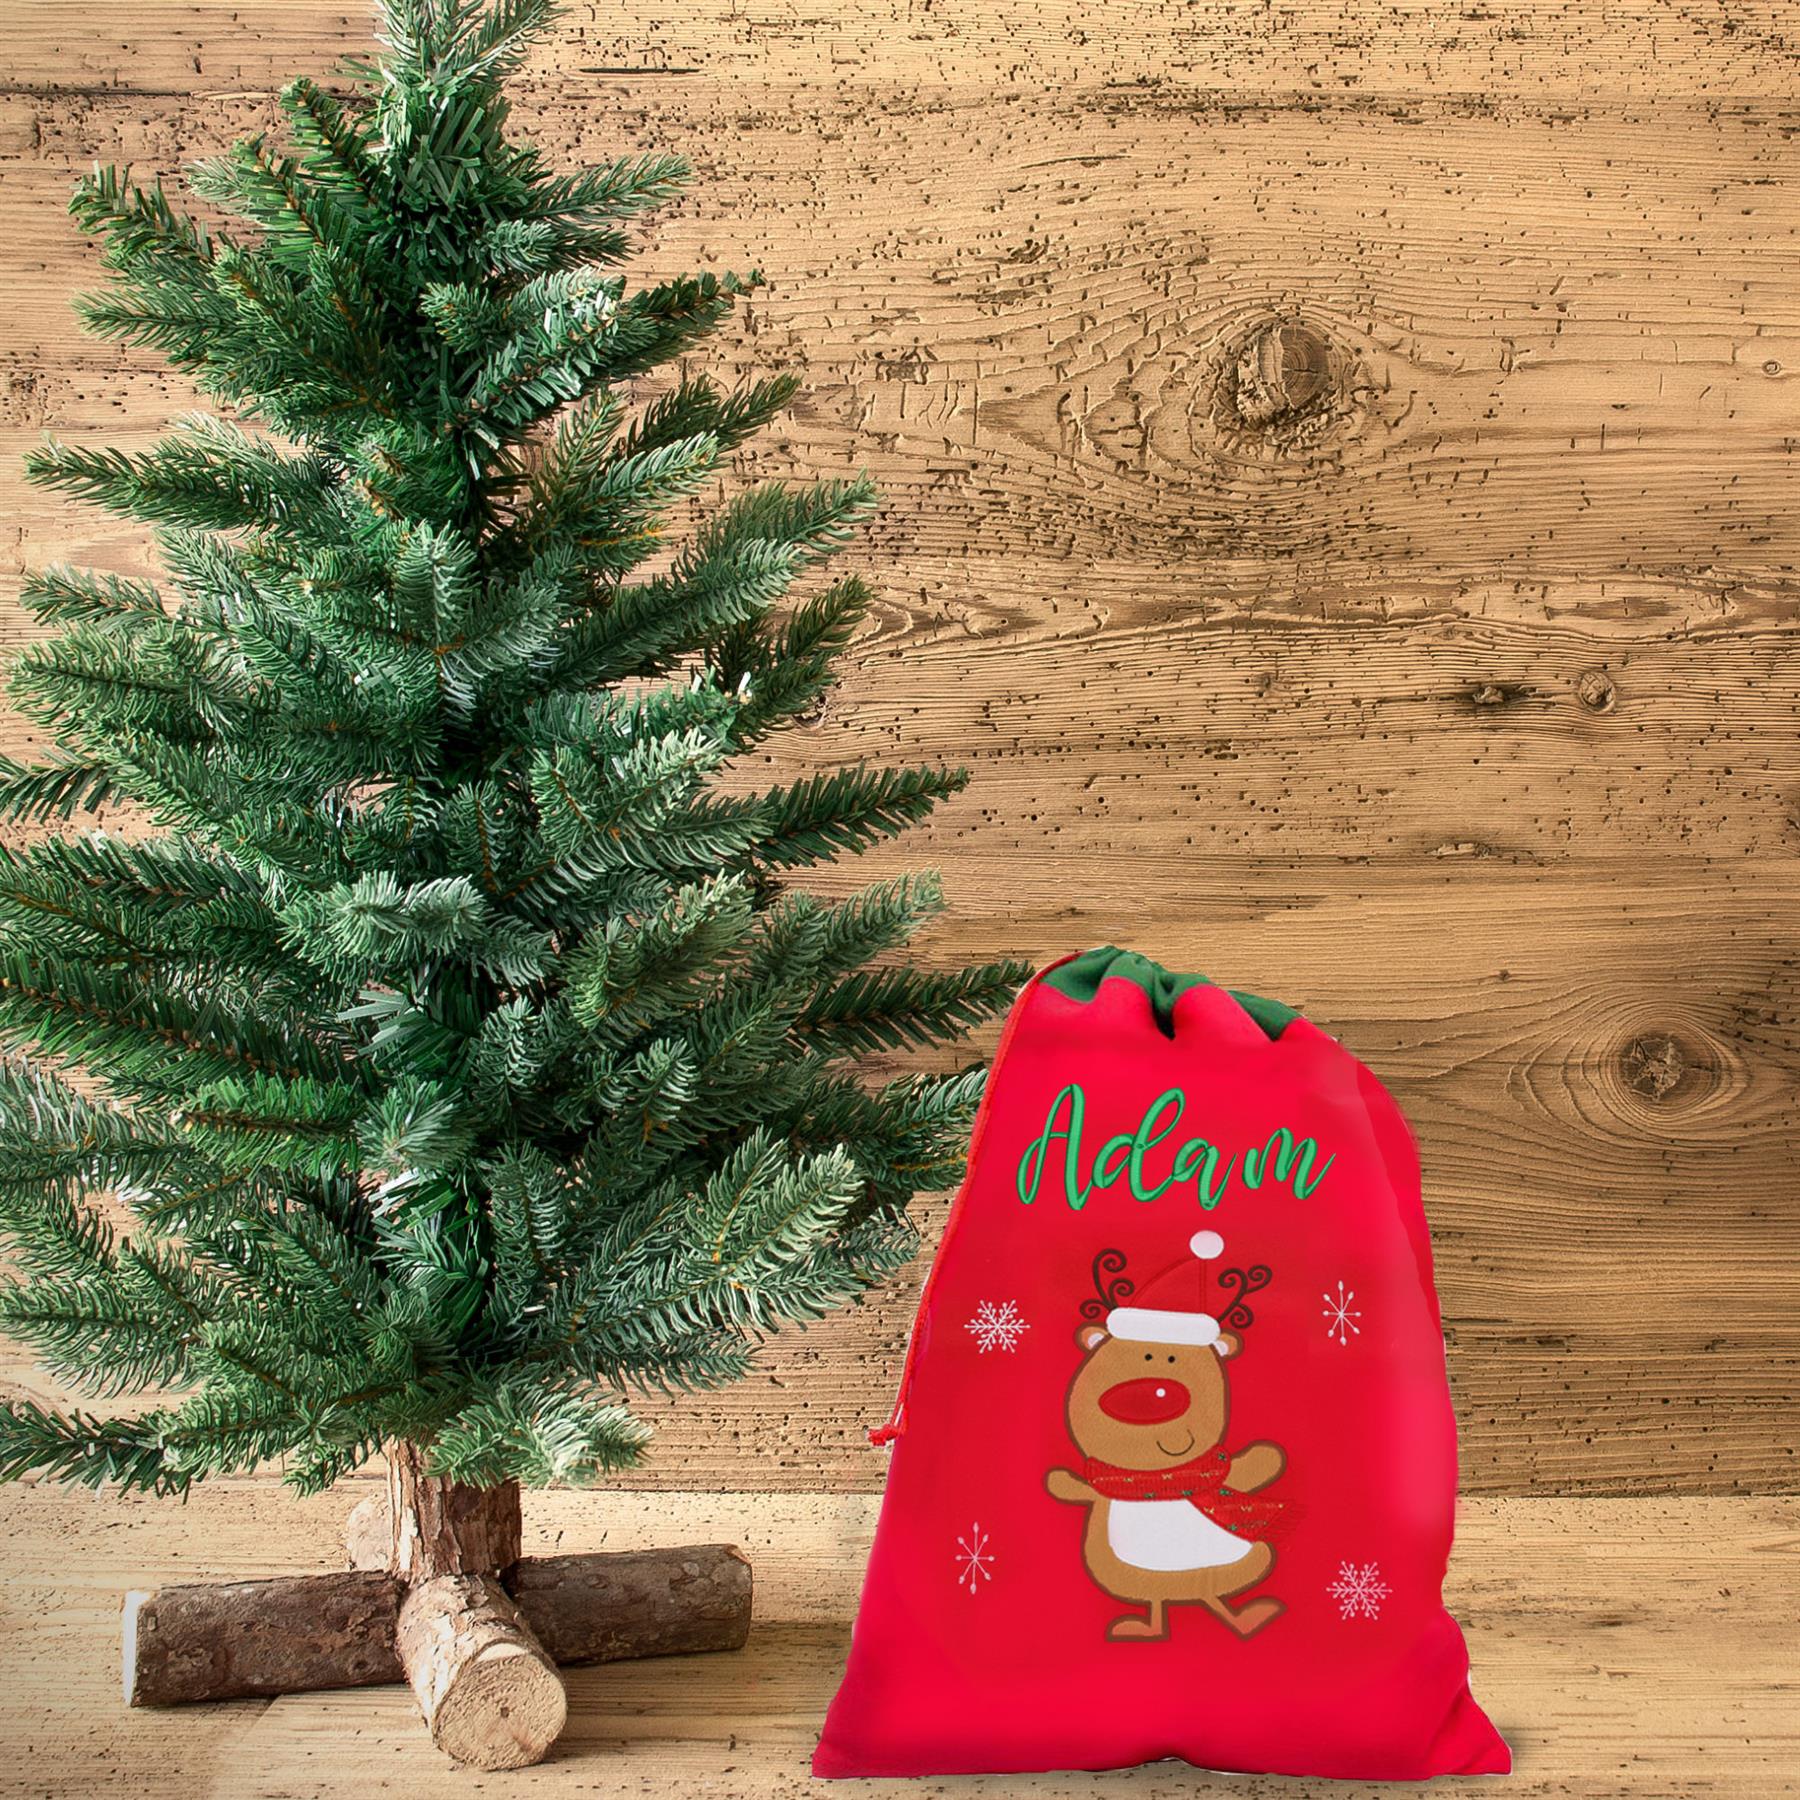 Personalised Embroidered Large Christmas Reindeer Santa Sack  - Always Looking Good -   